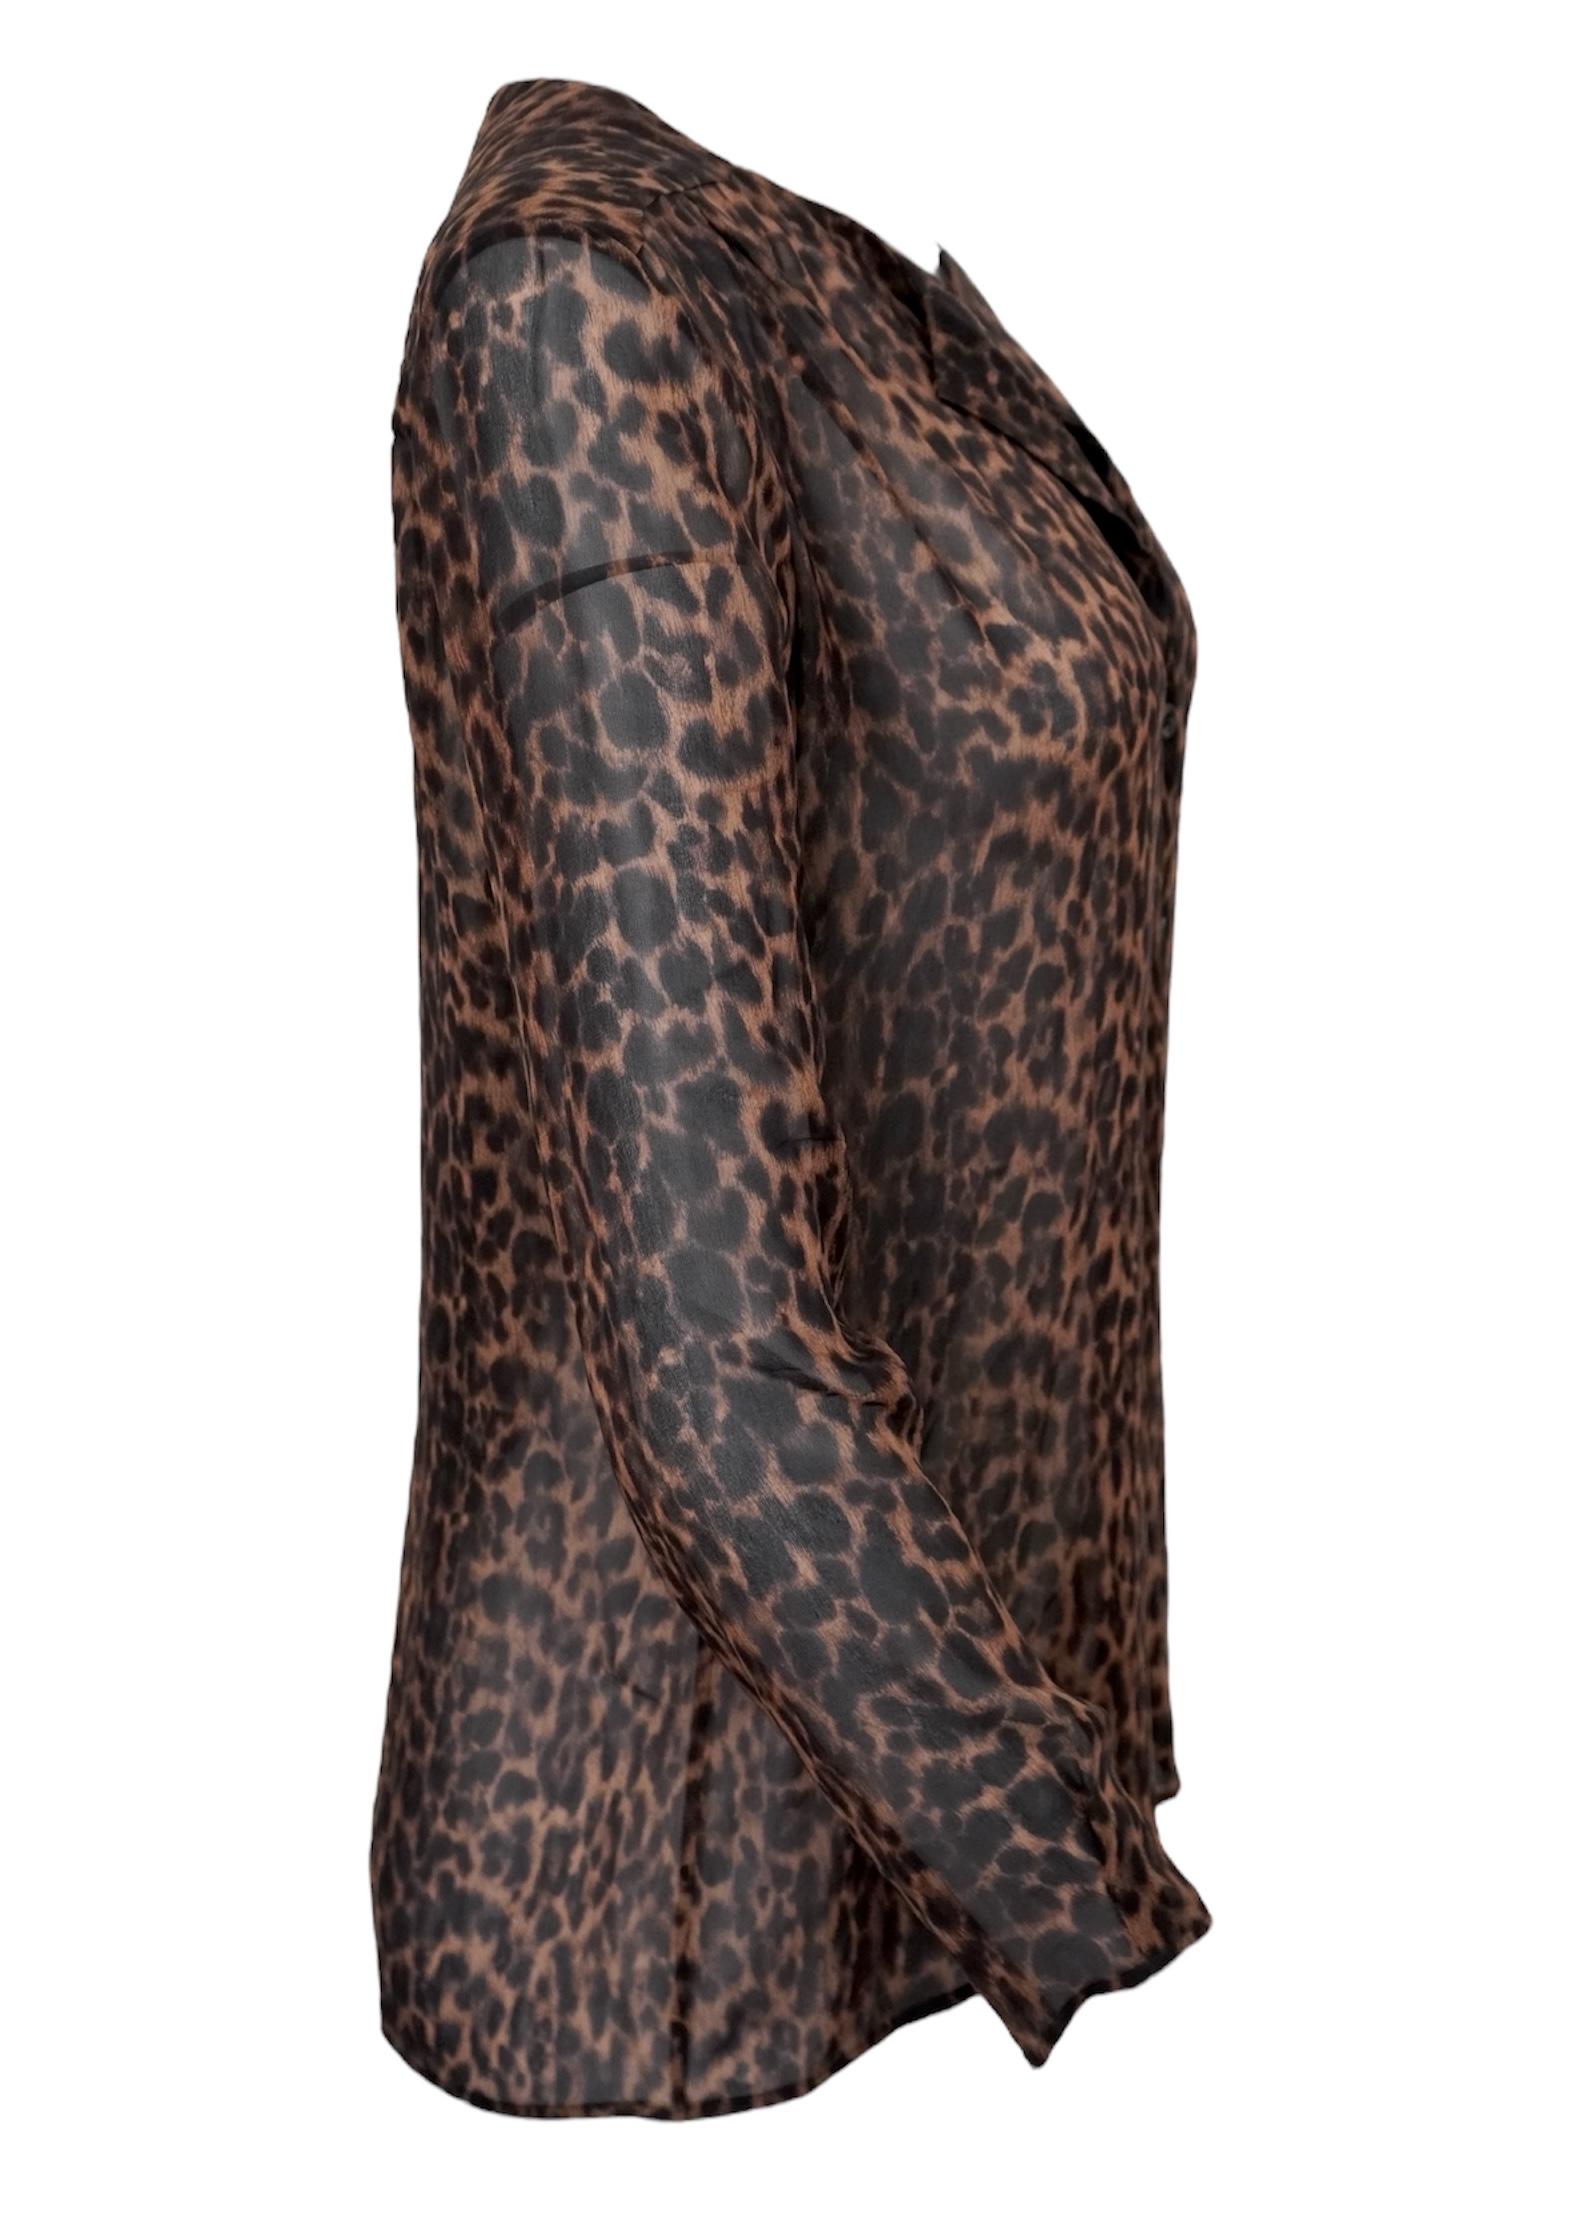 Yves Saint Laurent Silk Sheer Leopard Buttoned Top. Fabriquées en Italie. Soie transparente, manches longues, fermeture à 6 boutons. La taille n'est pas indiquée. Longueur 27 pouces, poitrine 41 pouces, taille 39 pouces. 

Yves Saint Laurent SAS,